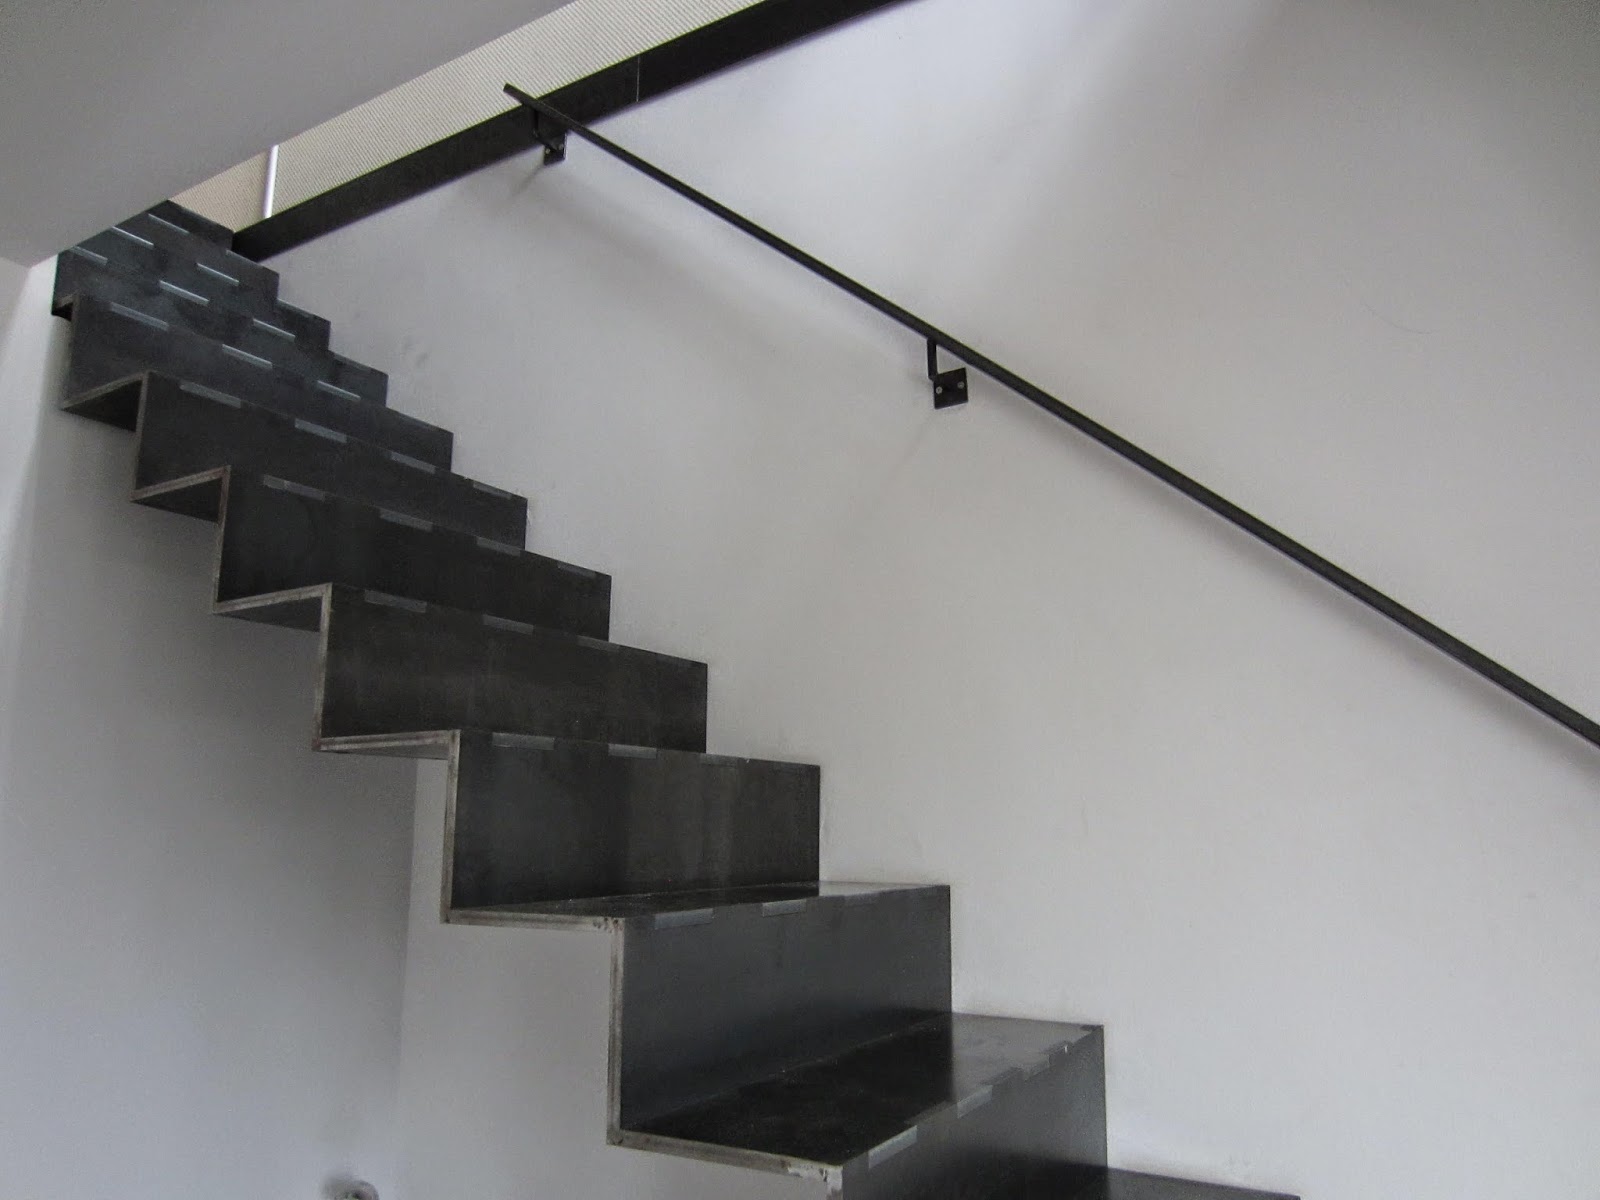 24 Bretter Fur Treppe - Treppen Design